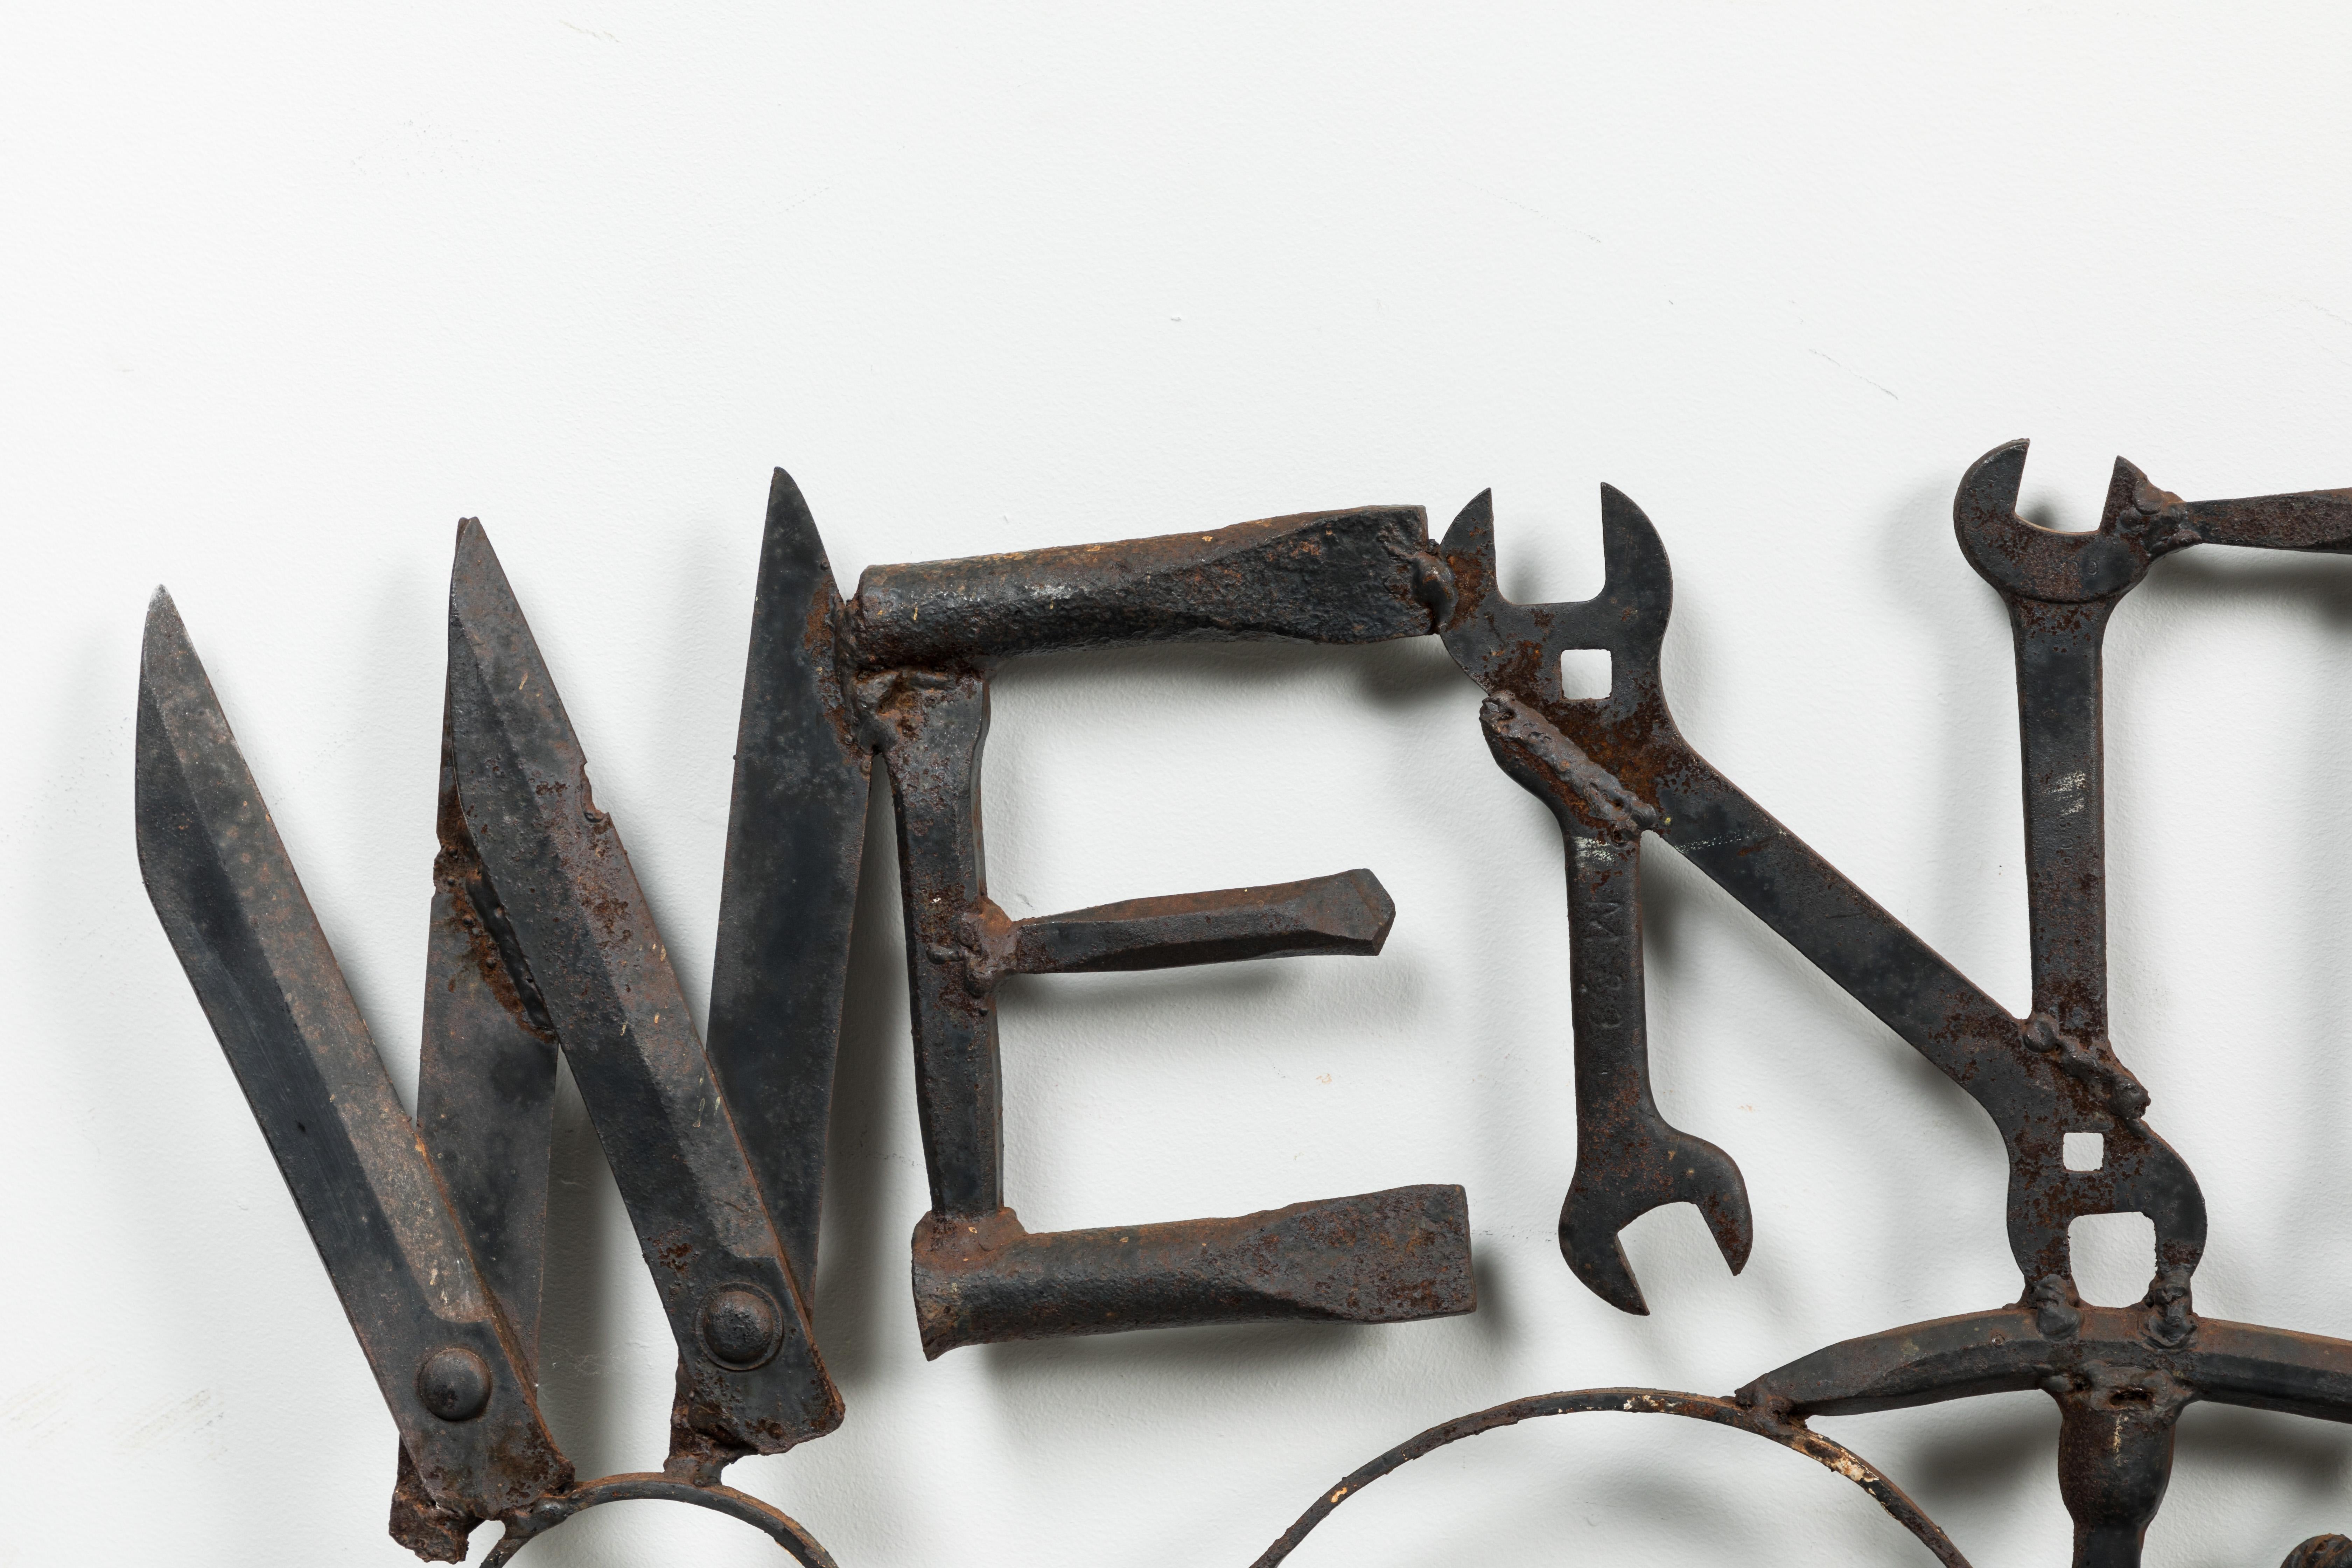 Das Schild des Wentworth Tool Museum wurde aus Werkzeug- und Eisenwarenresten zusammengebaut. Die Zusammenstellung umfasst viele Schraubenschlüssel, Bohrer, Sägen und Scheren. Schwere Eisenkonstruktion. Ein großartiges Stück amerikanischer